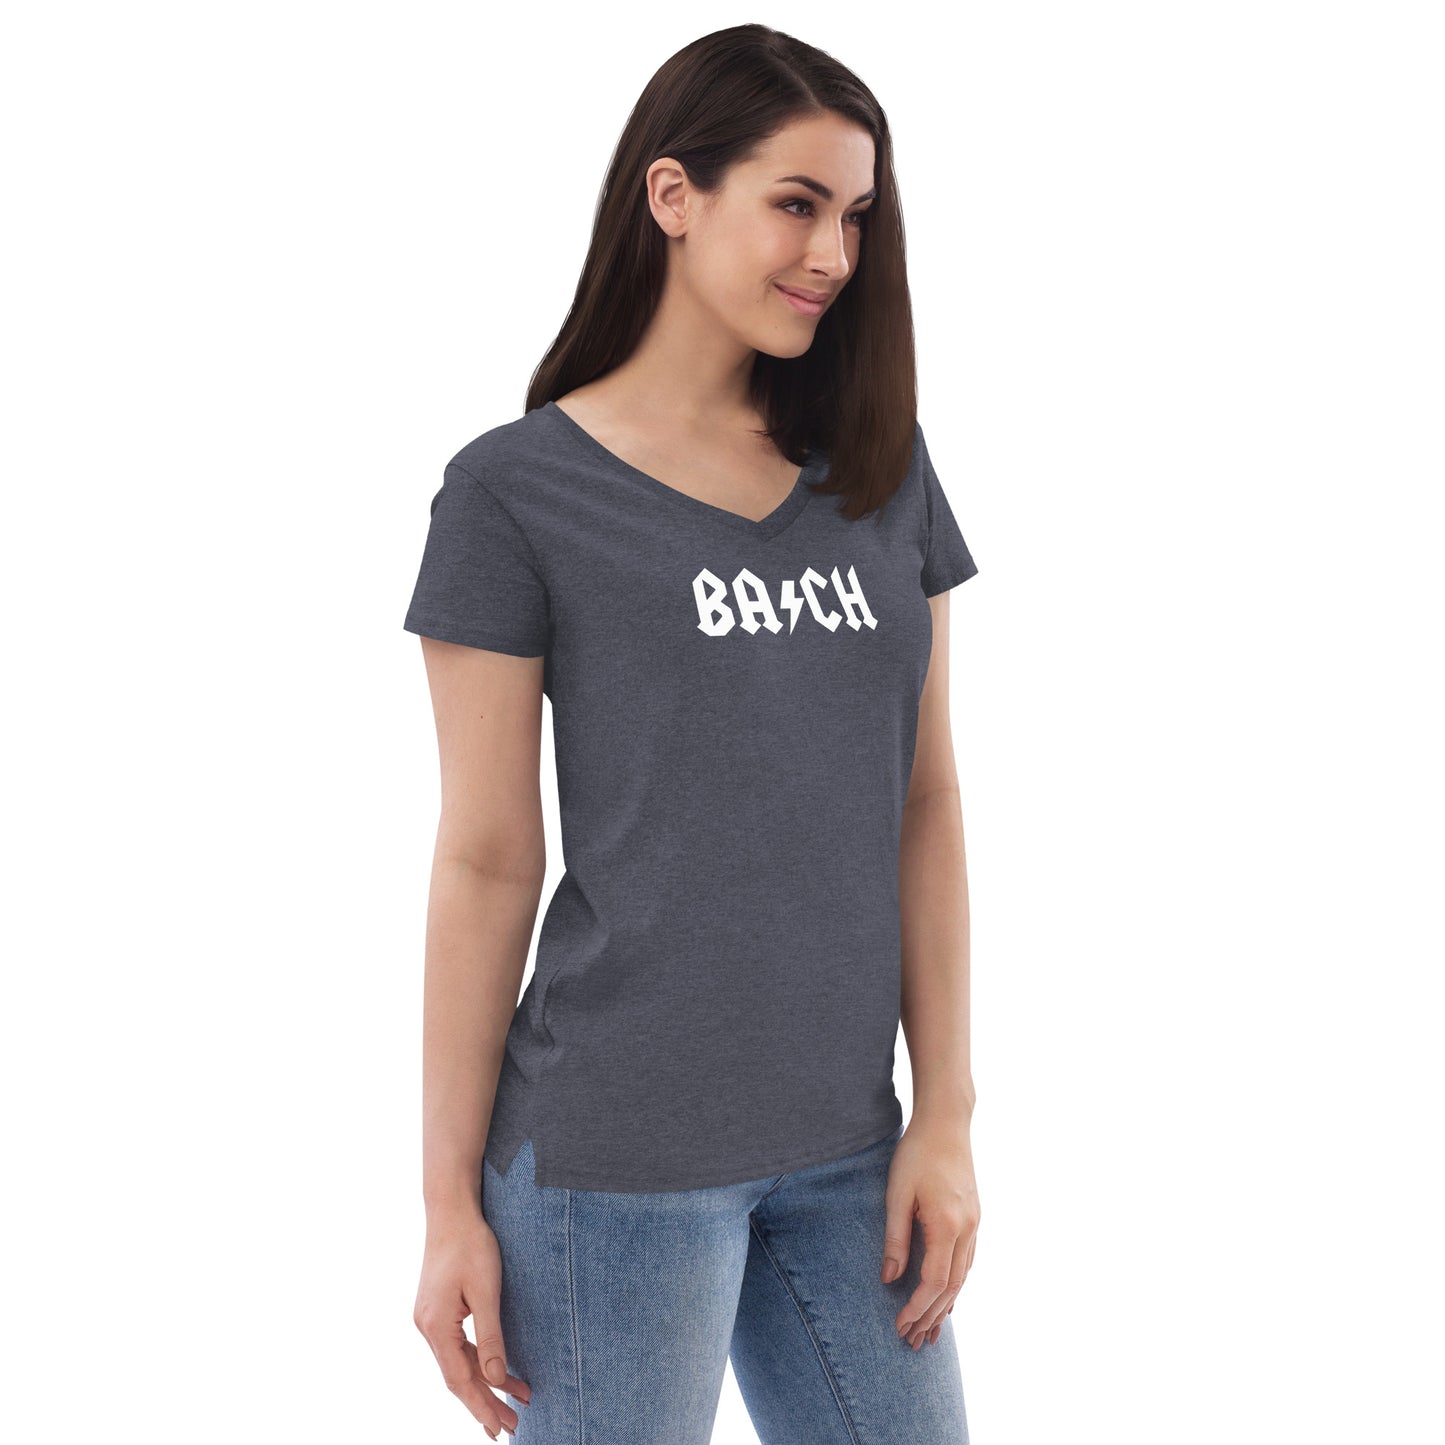 BA/CH Women's V-neck T-Shirt